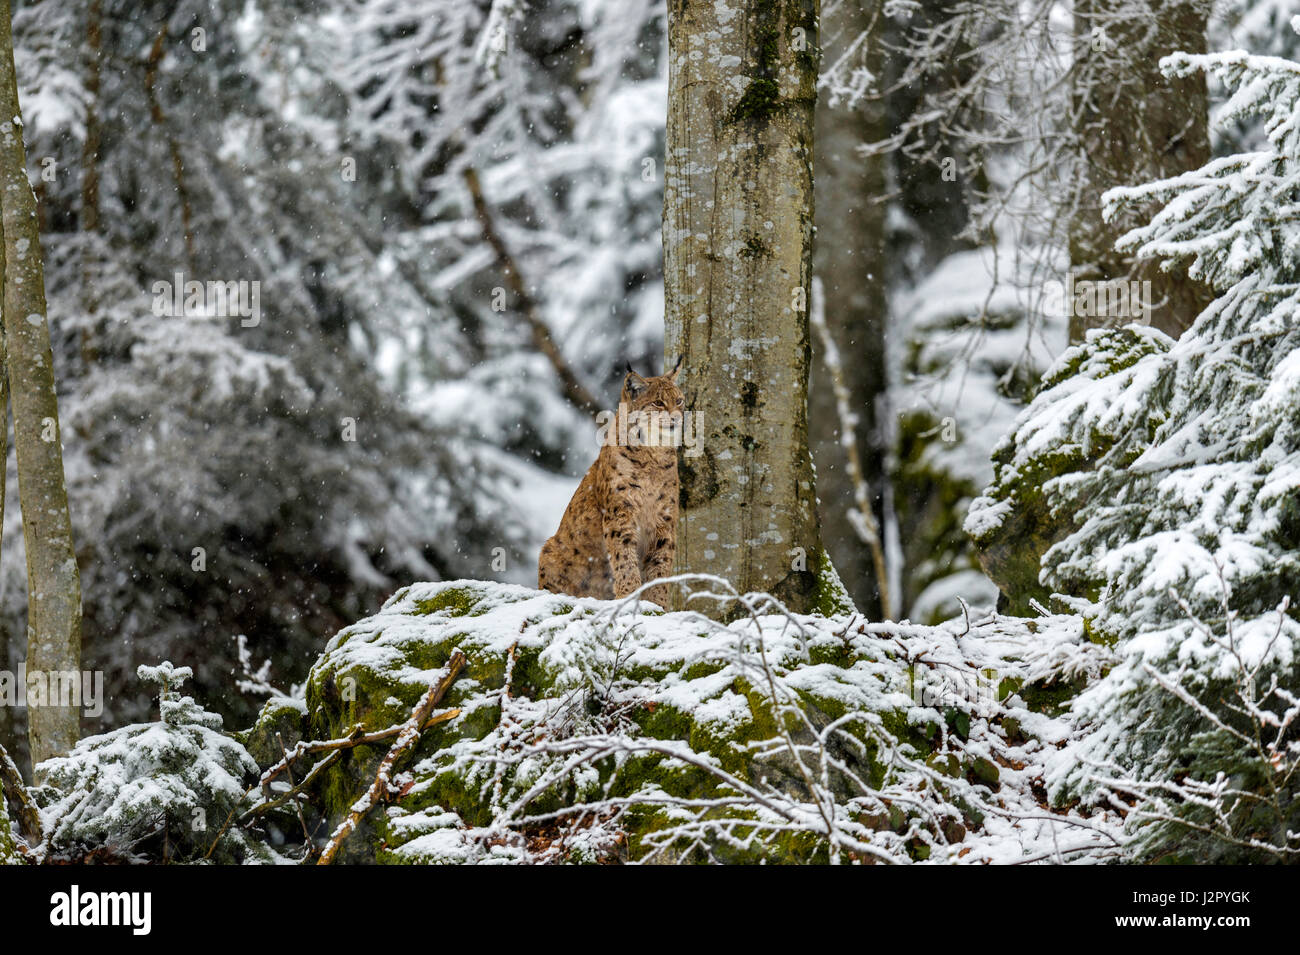 Hermoso el lince eurásico (Lynx lynx) representada asentado sobre un afloramiento rocoso, encuestar a sus alrededores cubiertos de nieve en un bosque remoto Configuración de invierno. Foto de stock